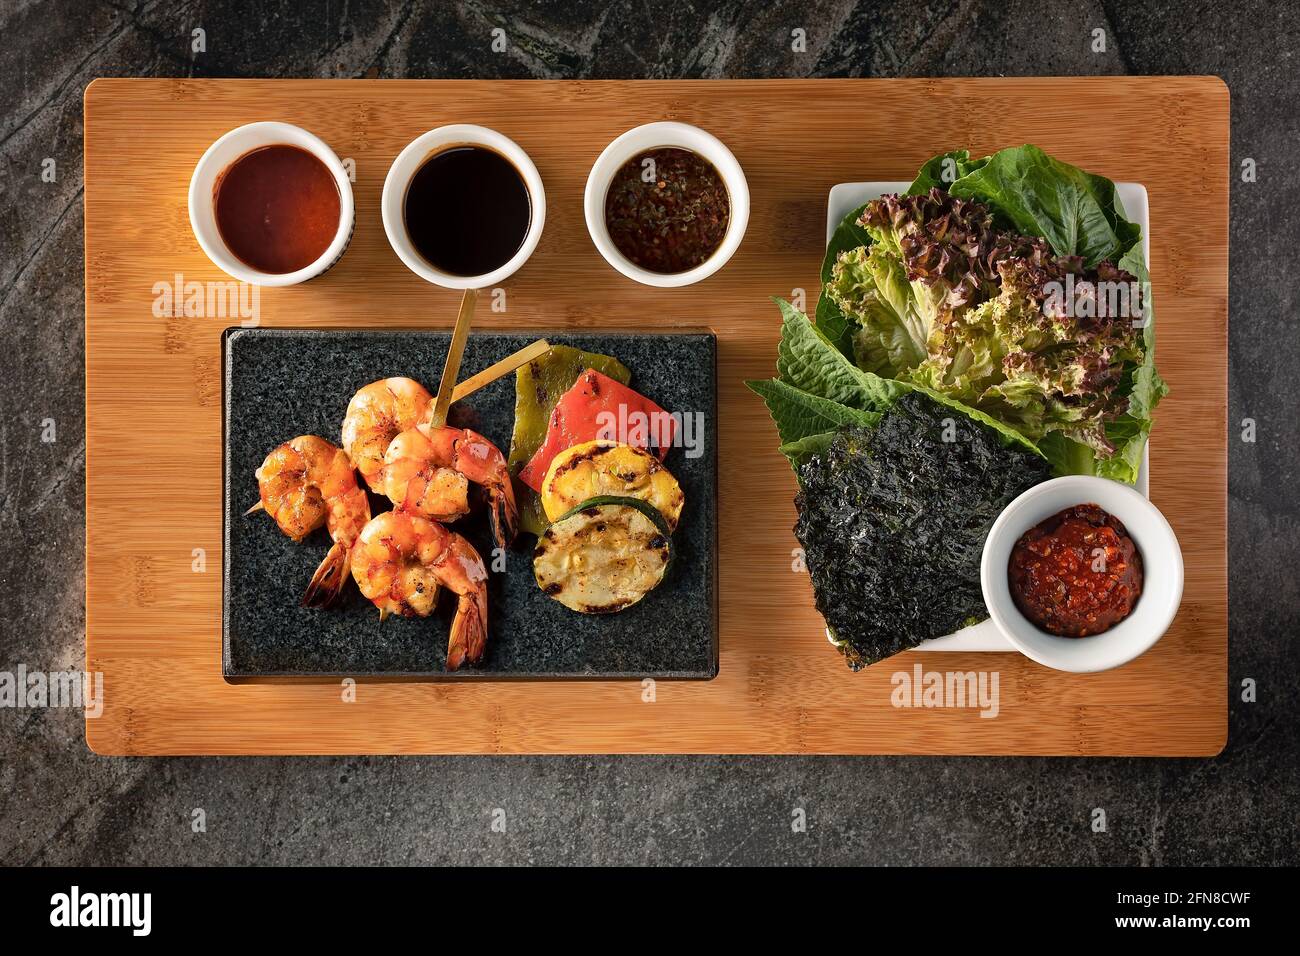 Plat d'un barbecue coréen avec crevettes grillées, légumes, salade et sauces Banque D'Images